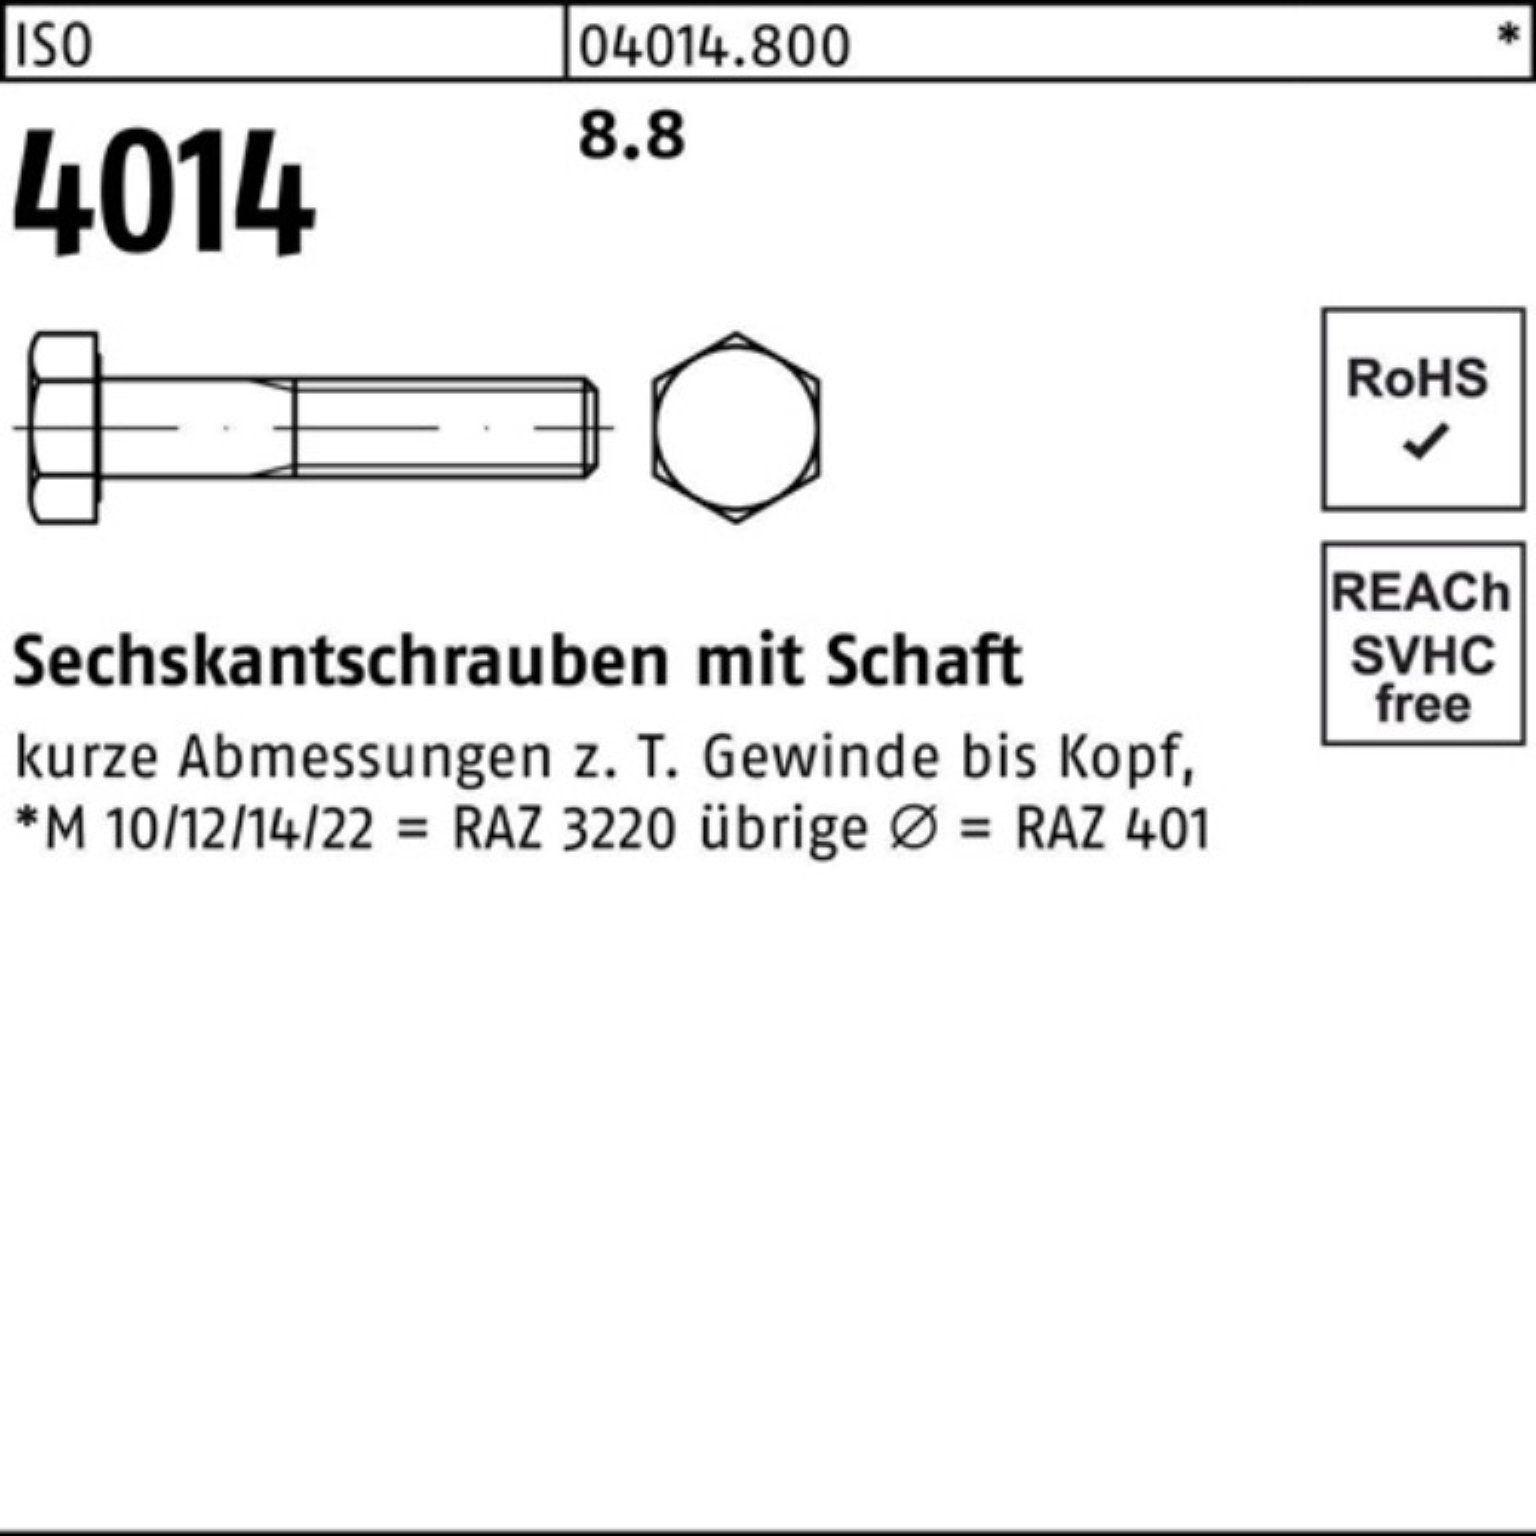 Bufab Sechskantschraube 100er 50 M14x 4014 8.8 ISO ISO 75 Pack Schaft Sechskantschraube Stück